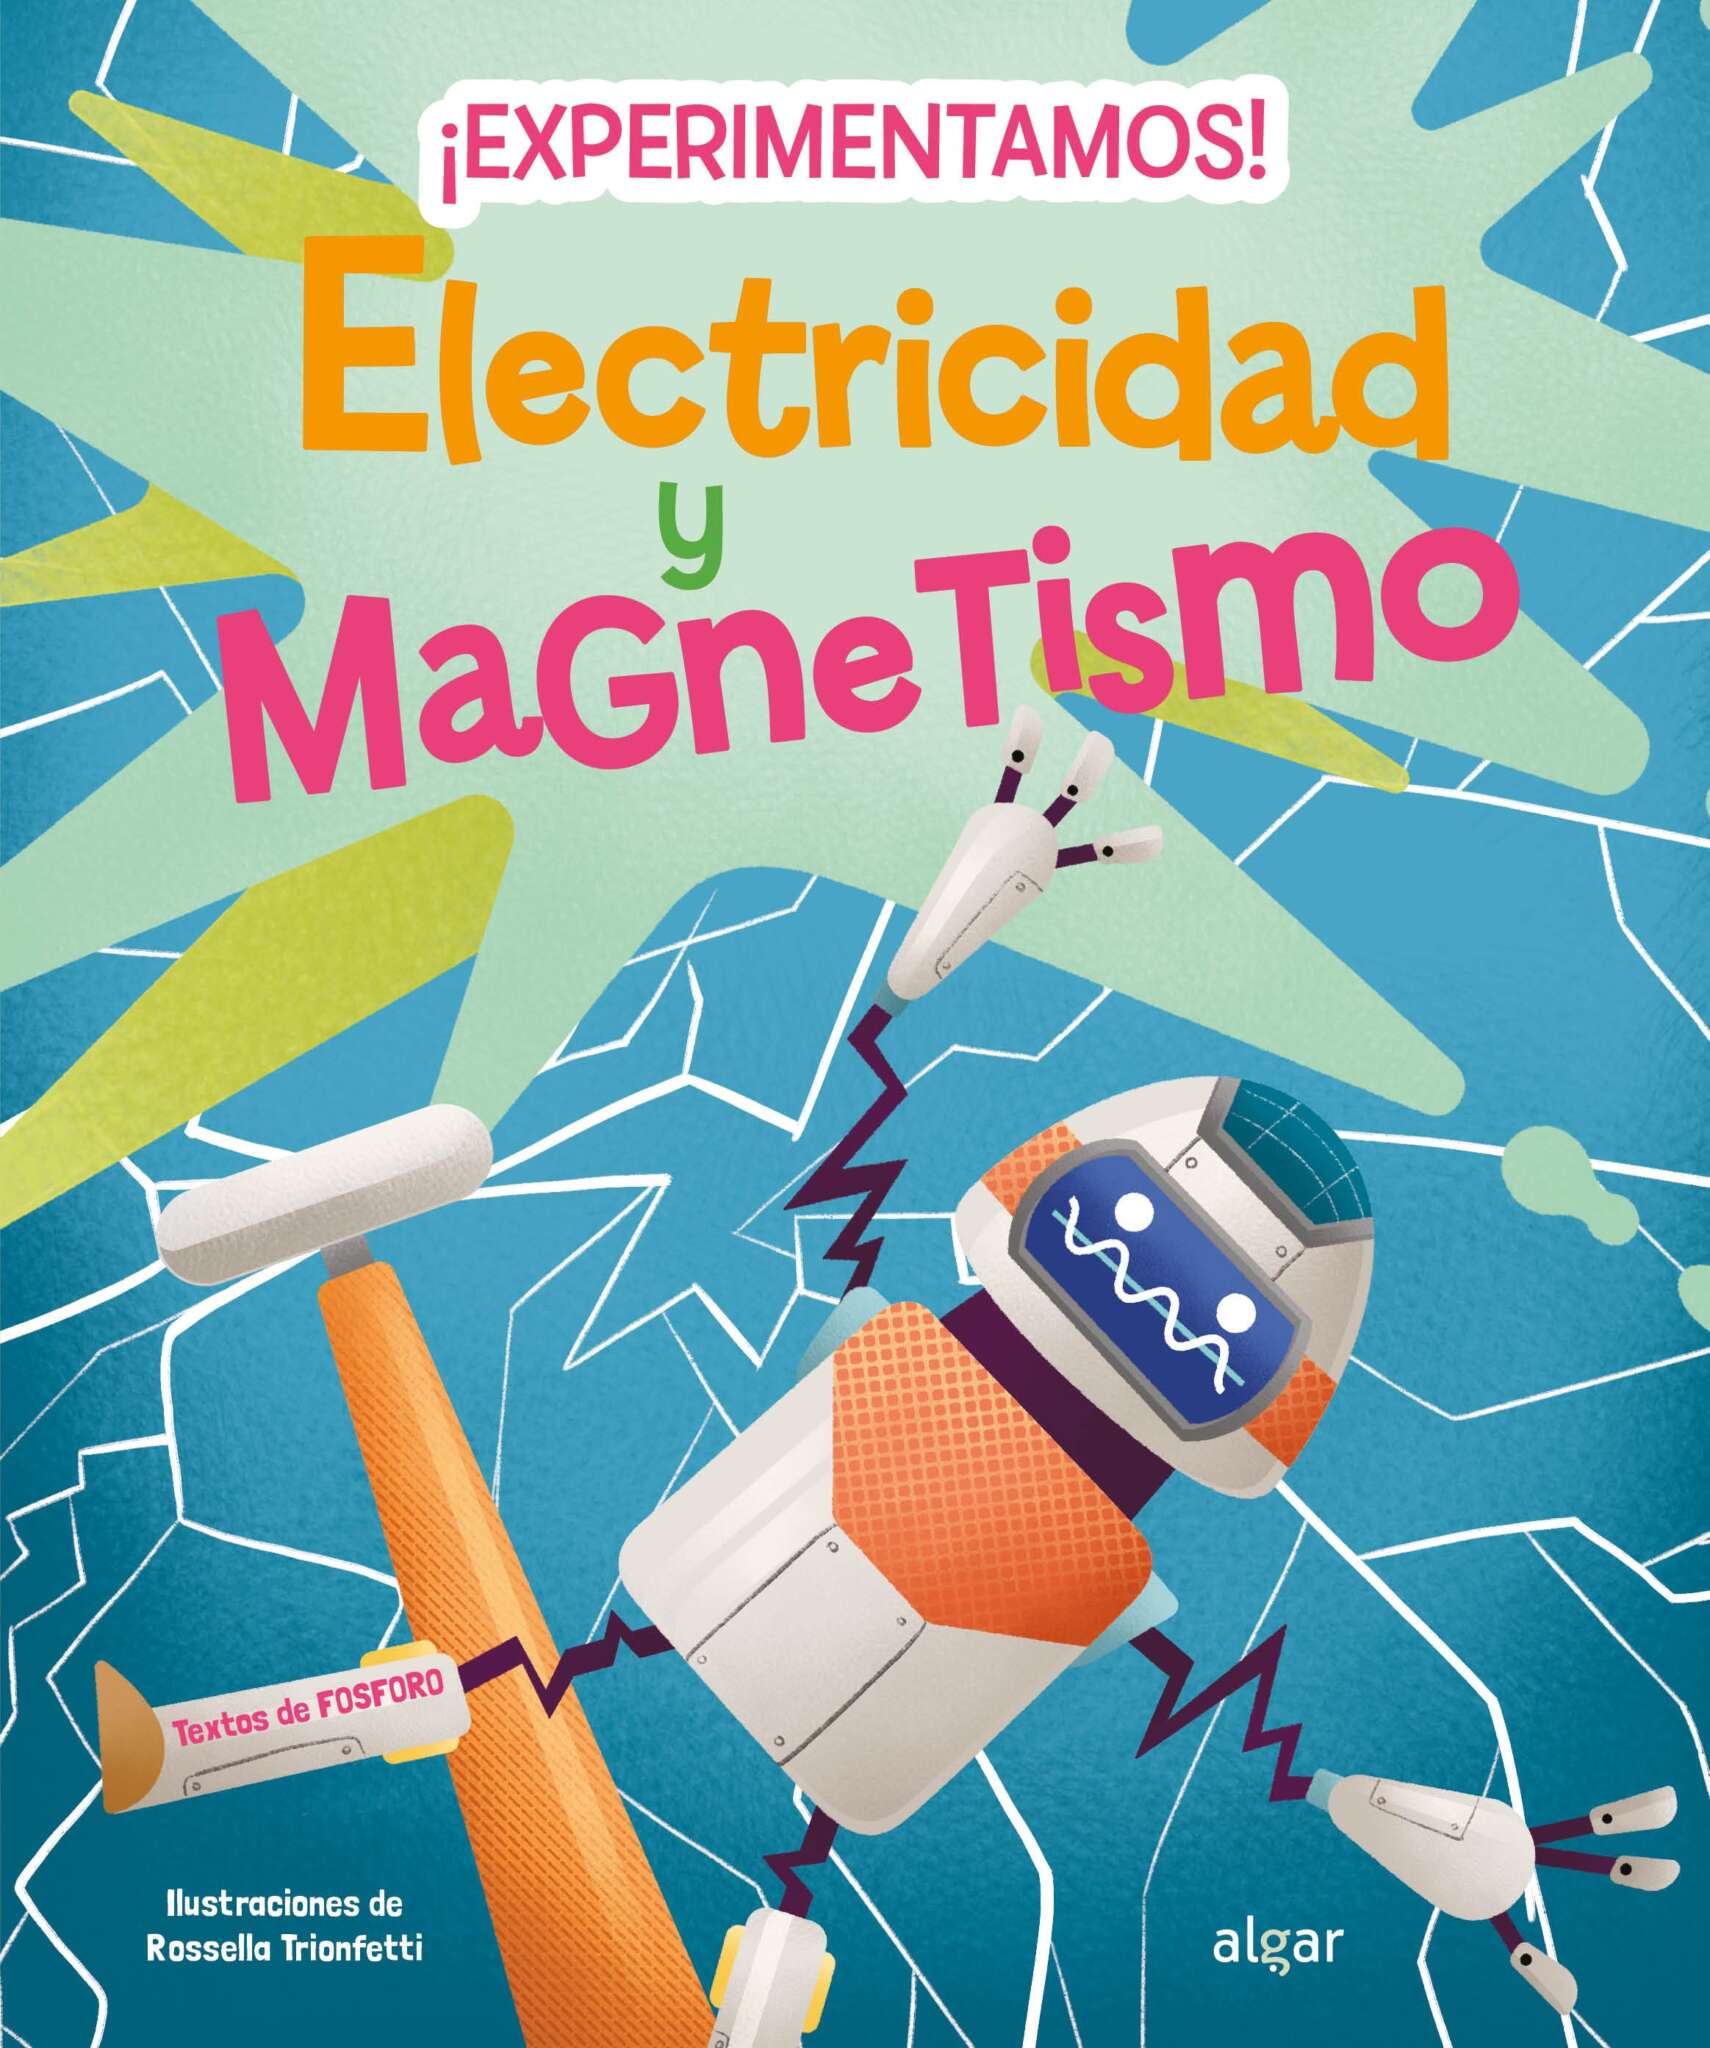 El magnetismo y la electricidad gobiernan y sostienen nuestra vida cuotidiana